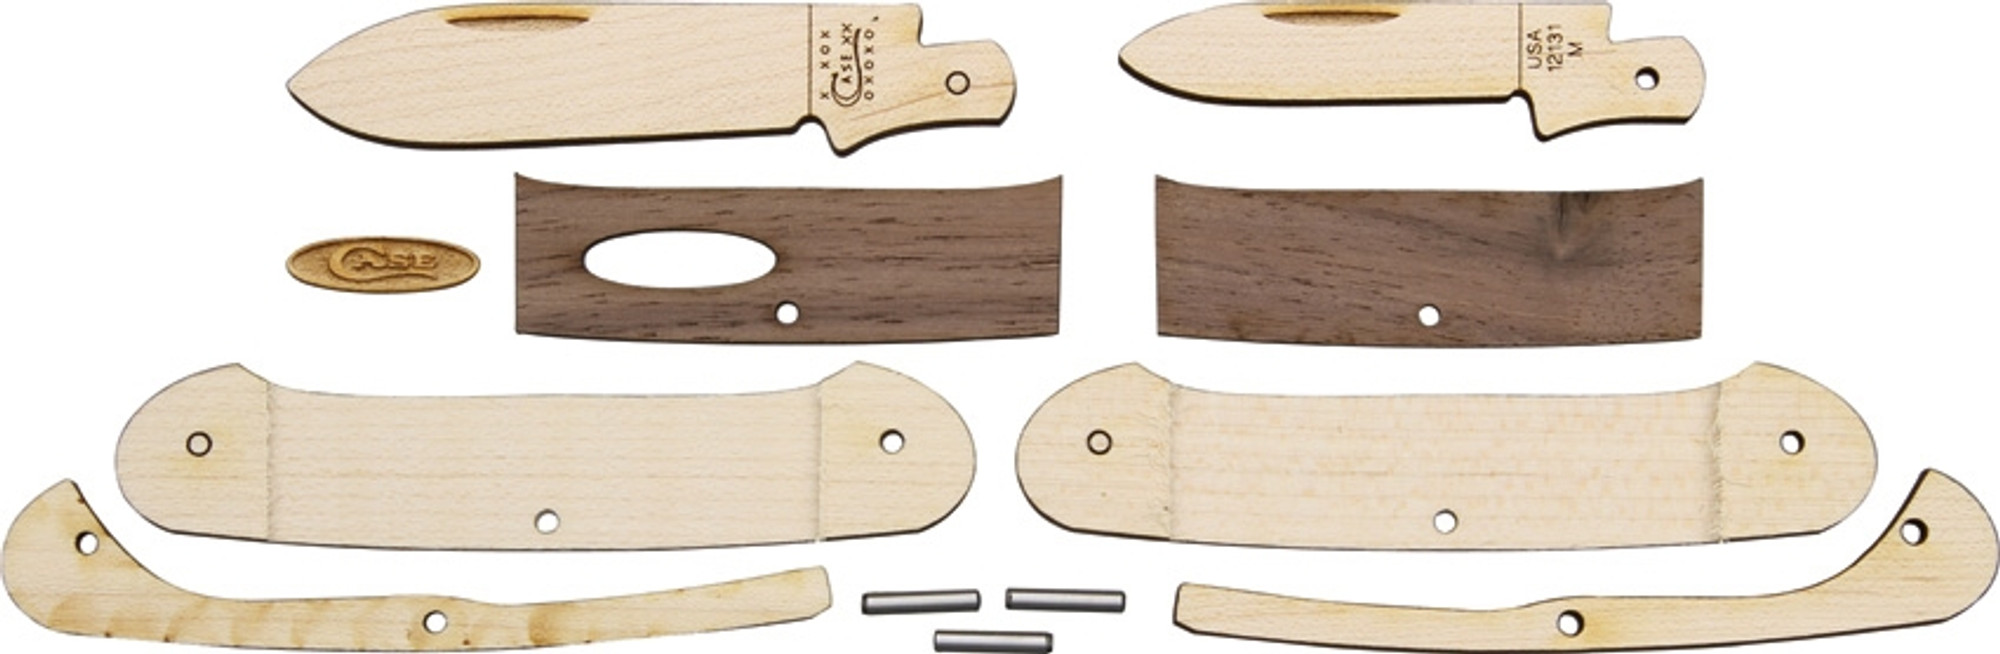 Wooden Knife Kit Canoe